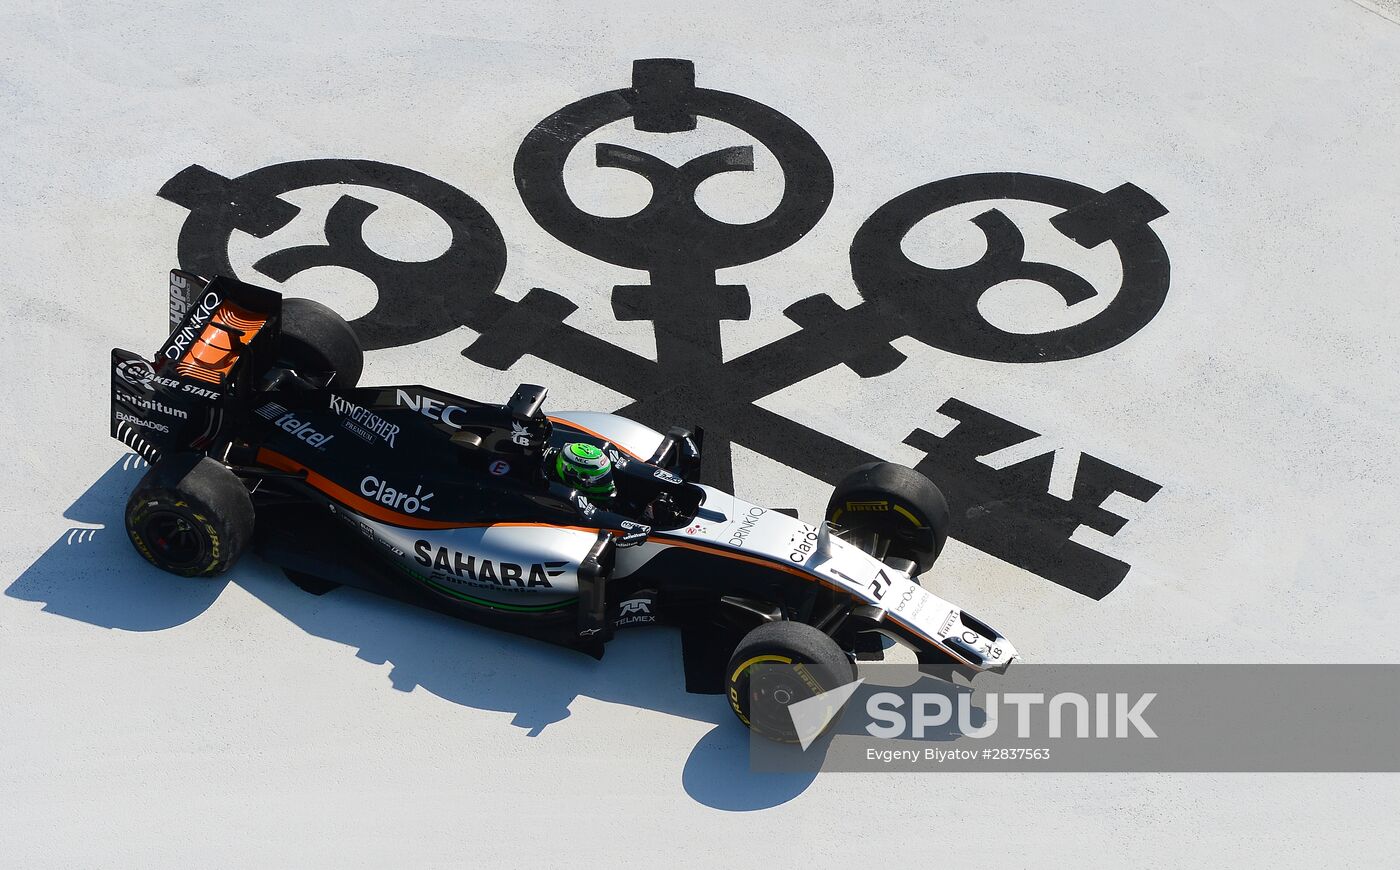 Formula 1 Russian Grand Prix. Races